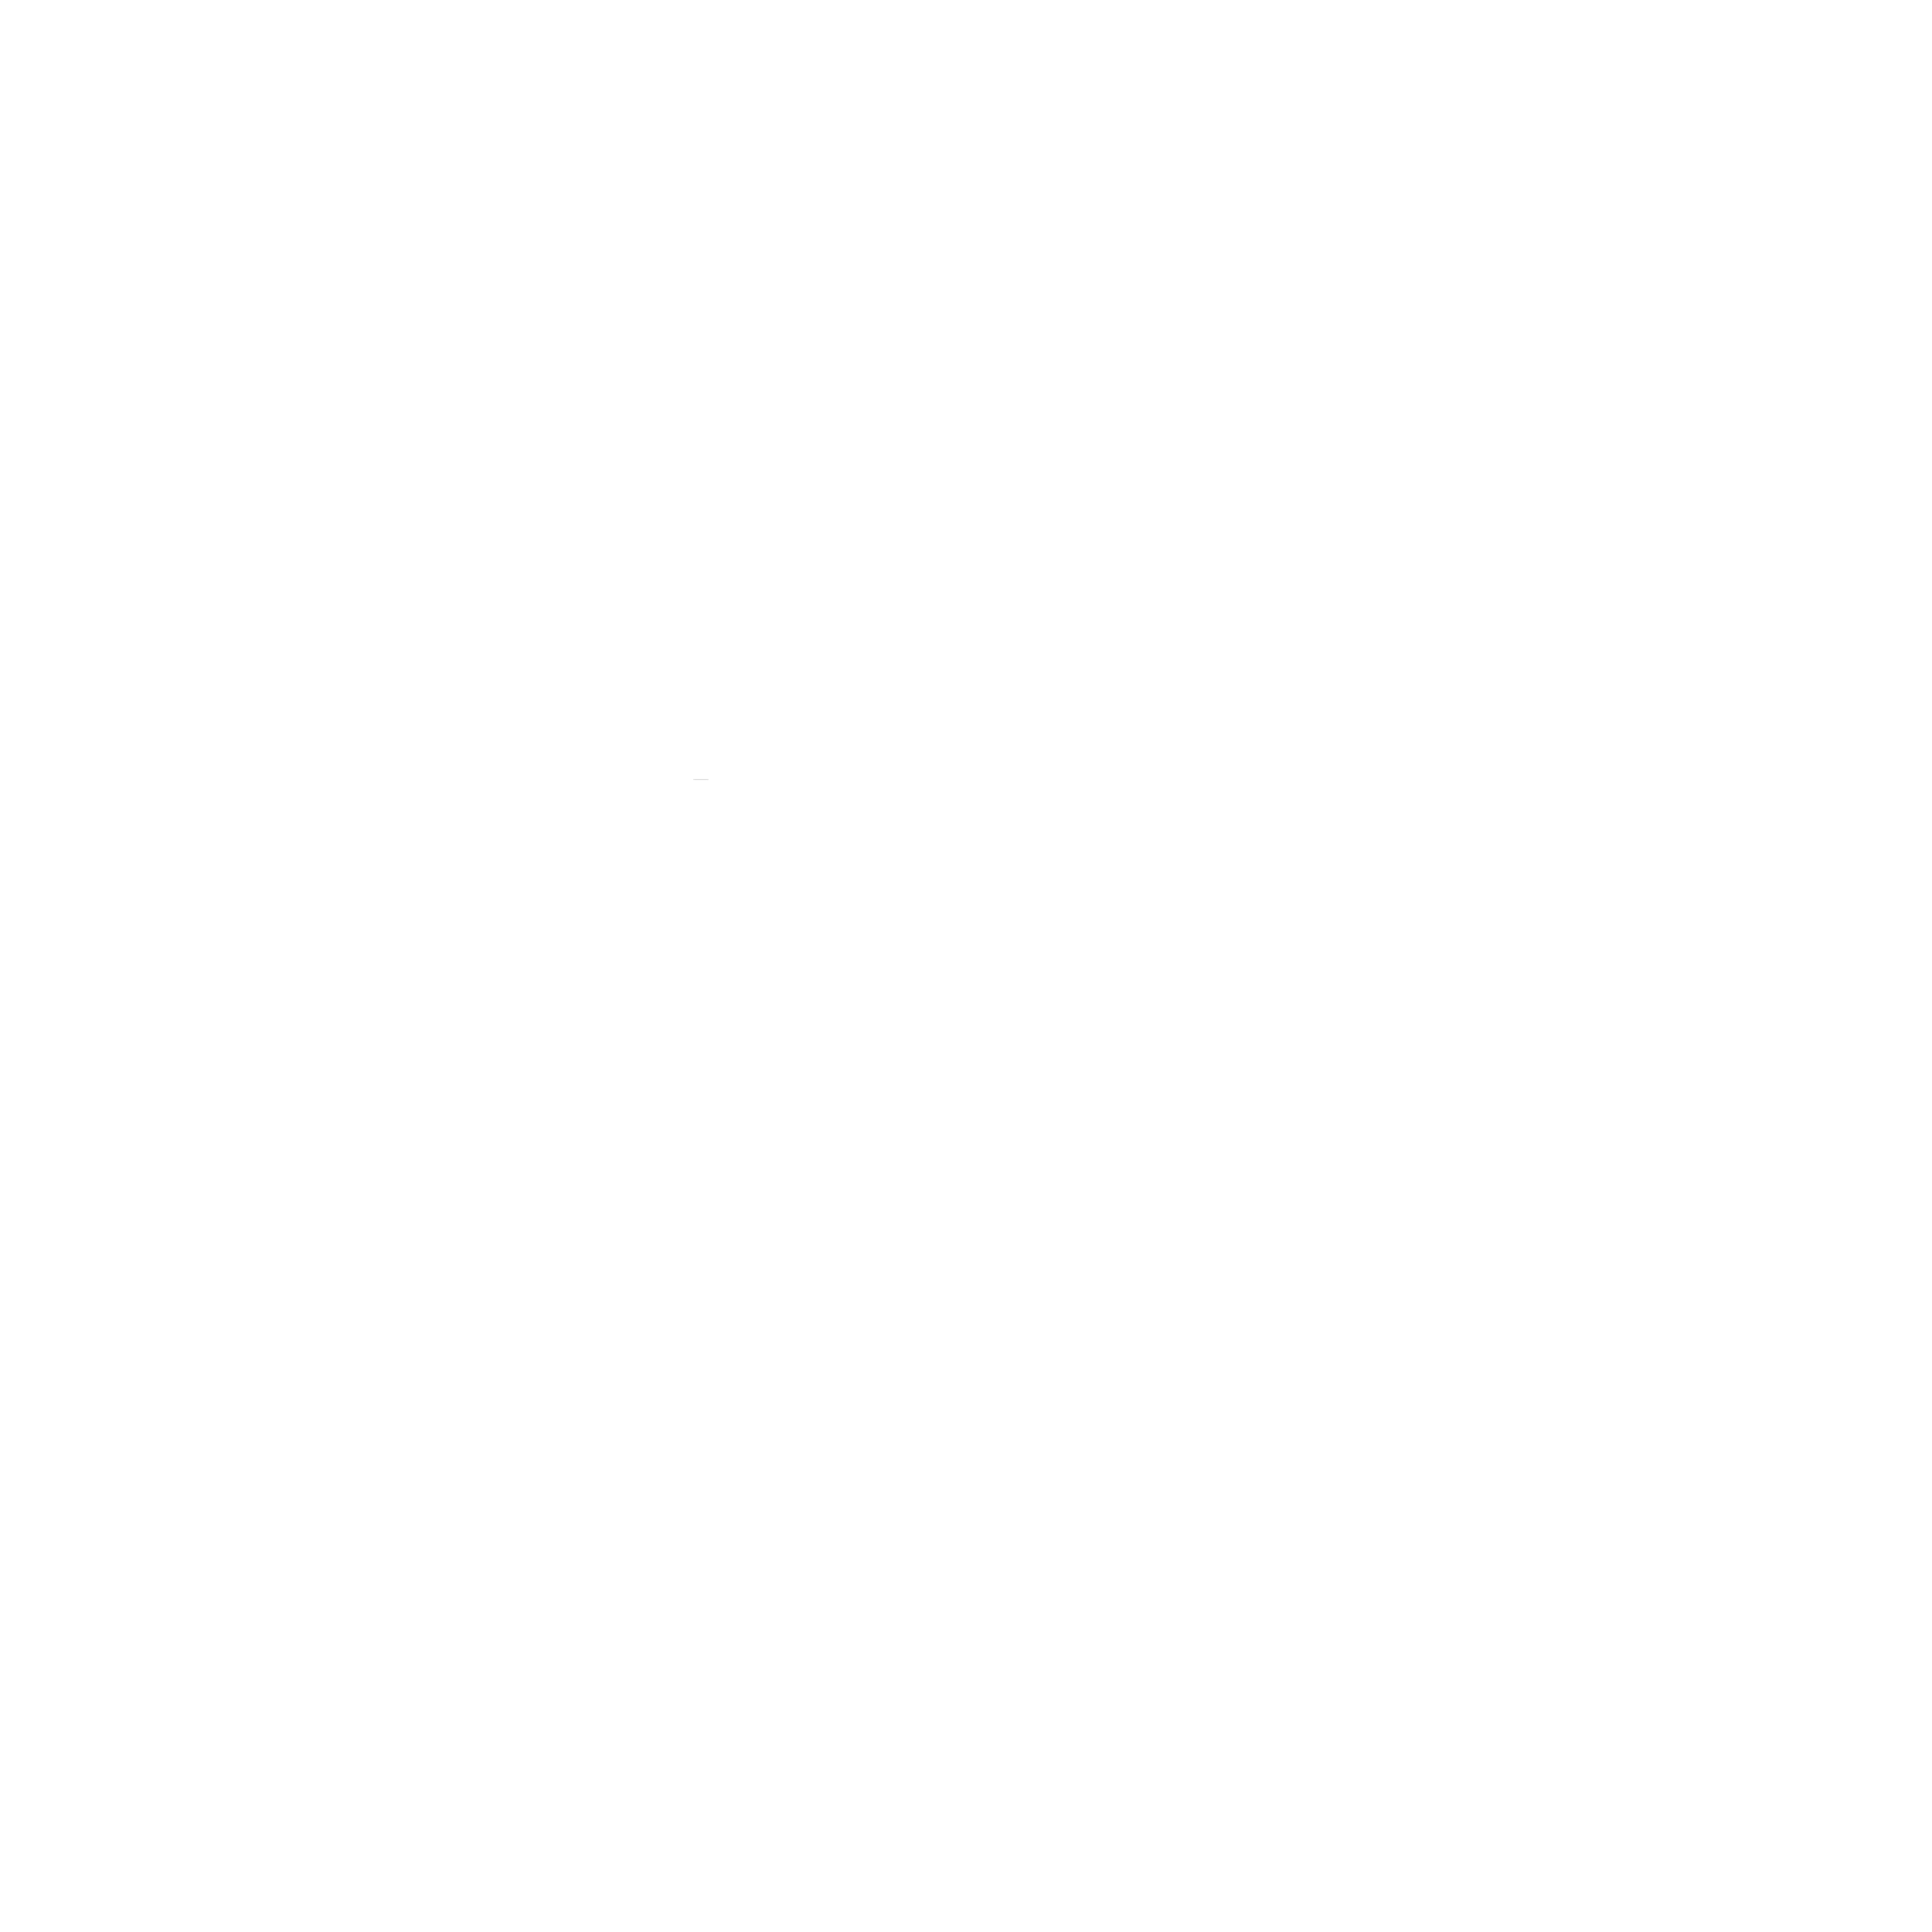 Singing Land Studio